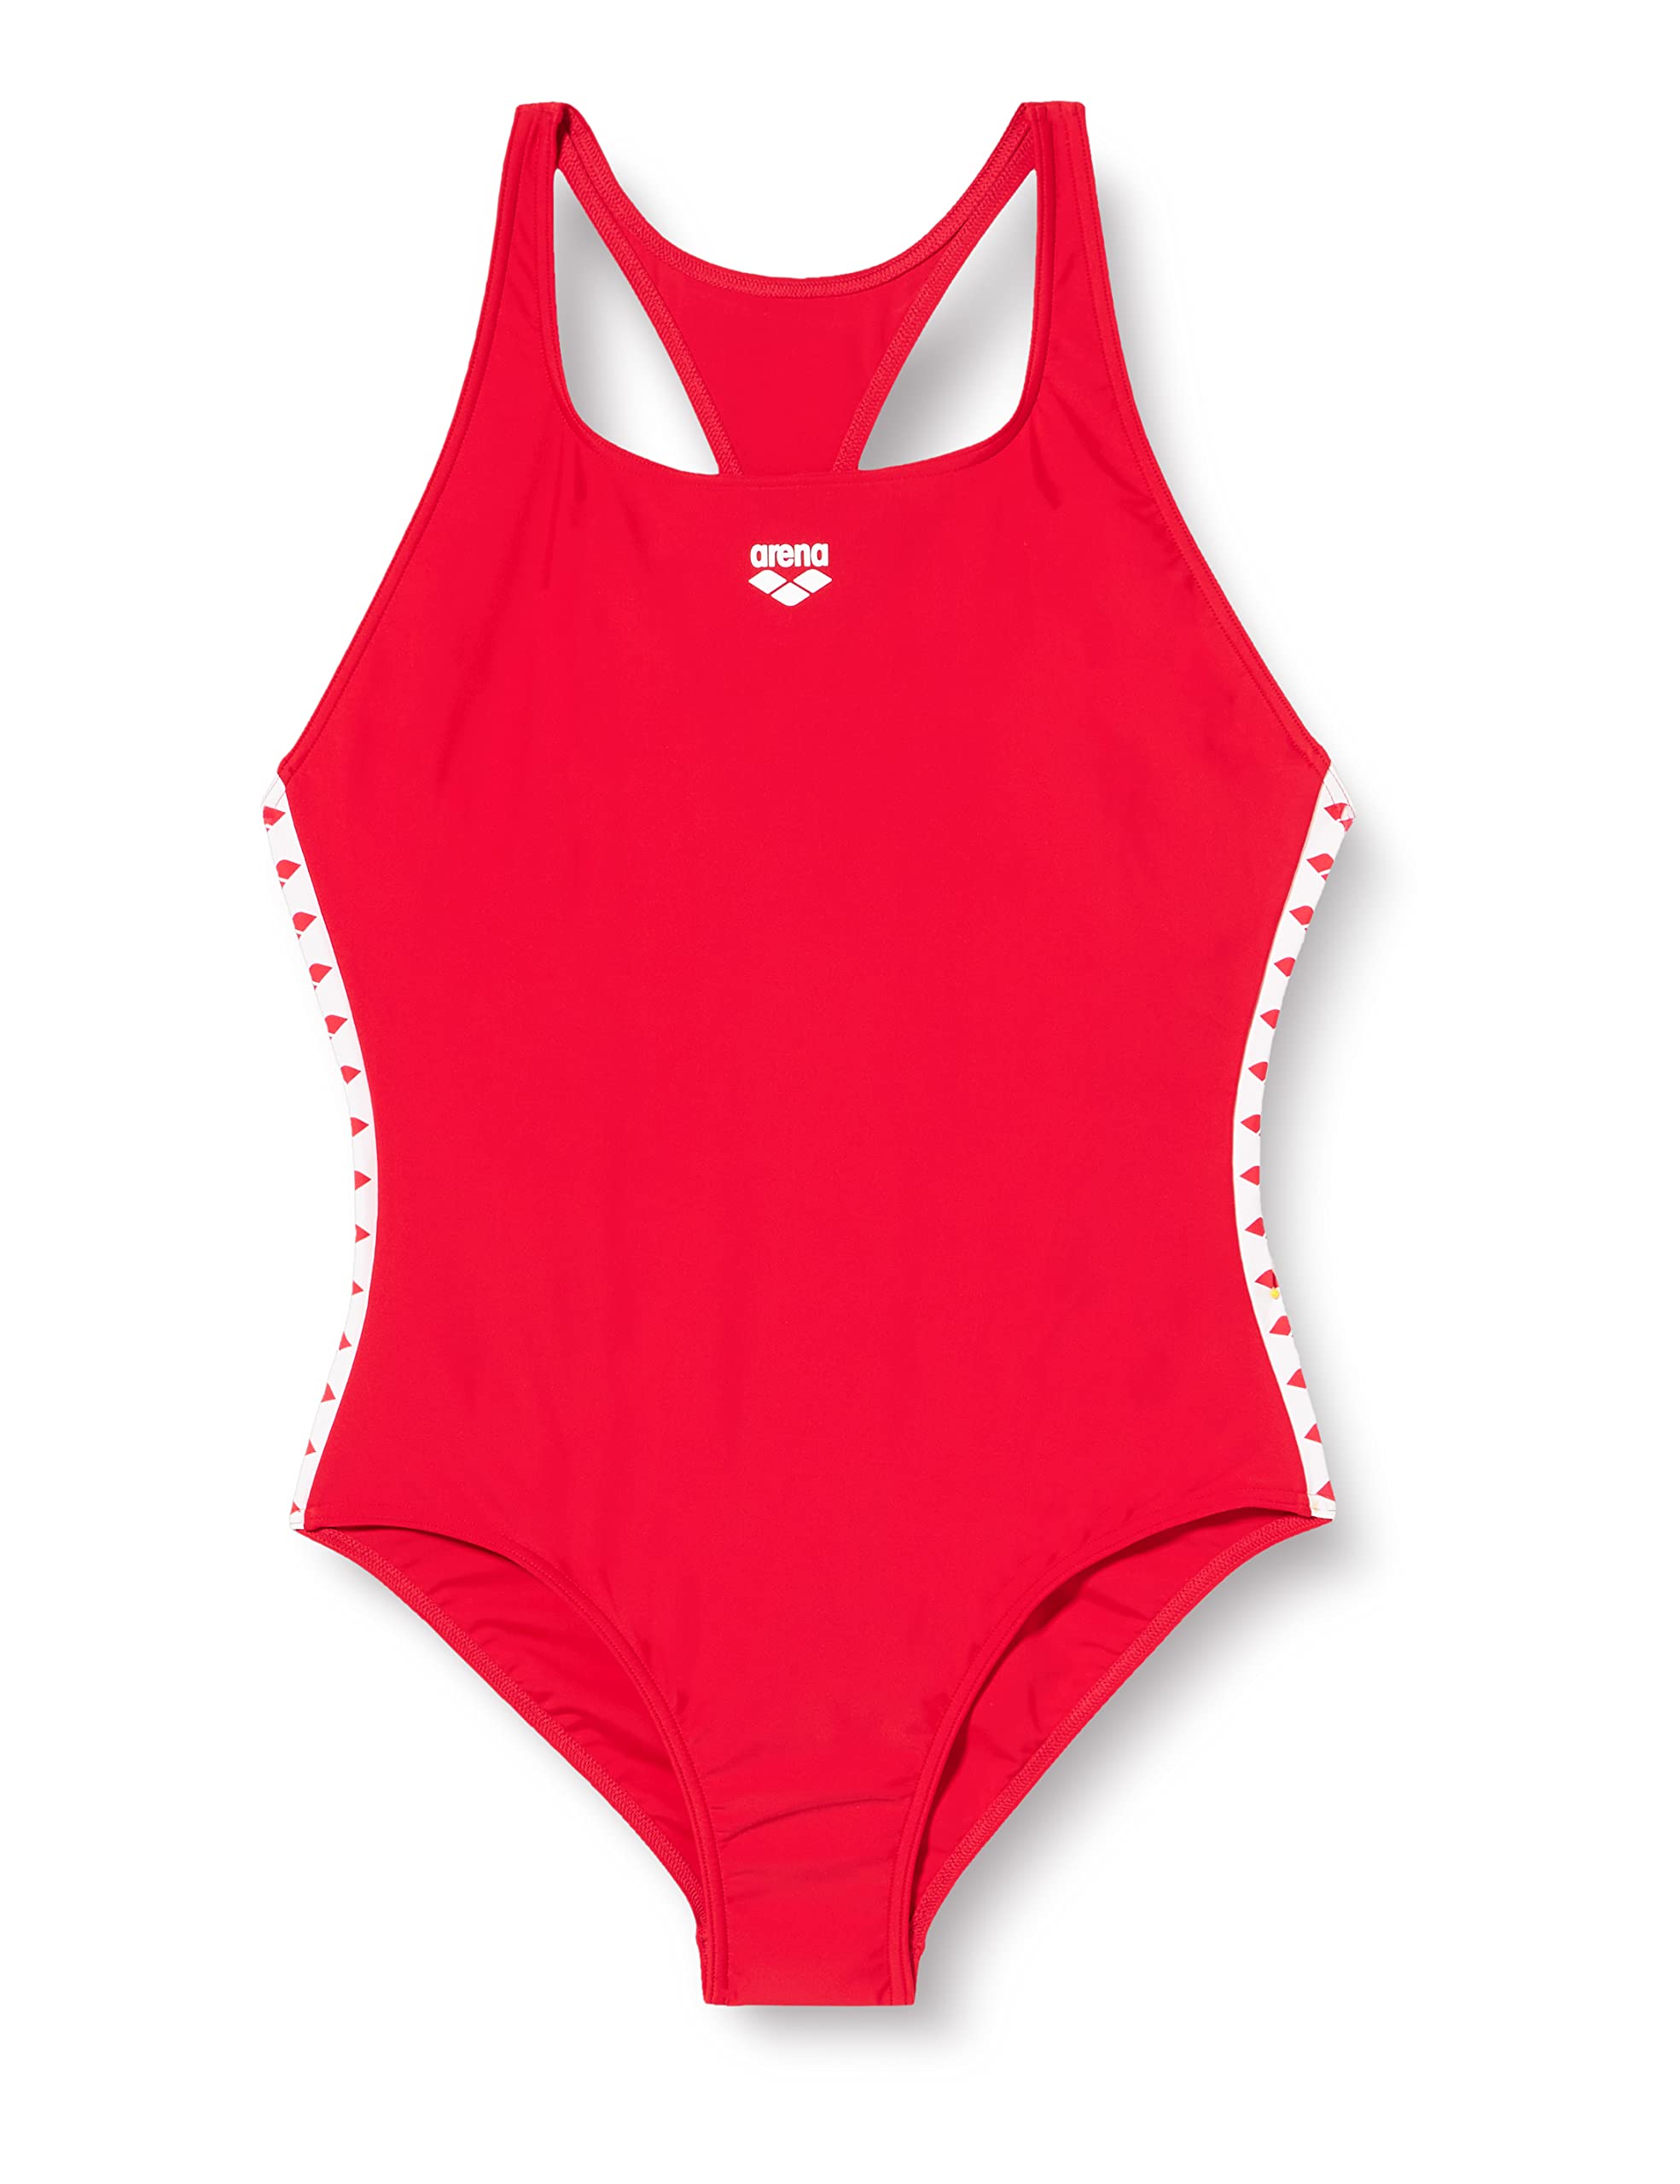 arena Icons Team Fit Einteiliger Badeanzug Damen, Chlor- und Salzbeständiger Sport Schwimmanzug aus MaxFit Material mit UV-Schutz Faktor 50+